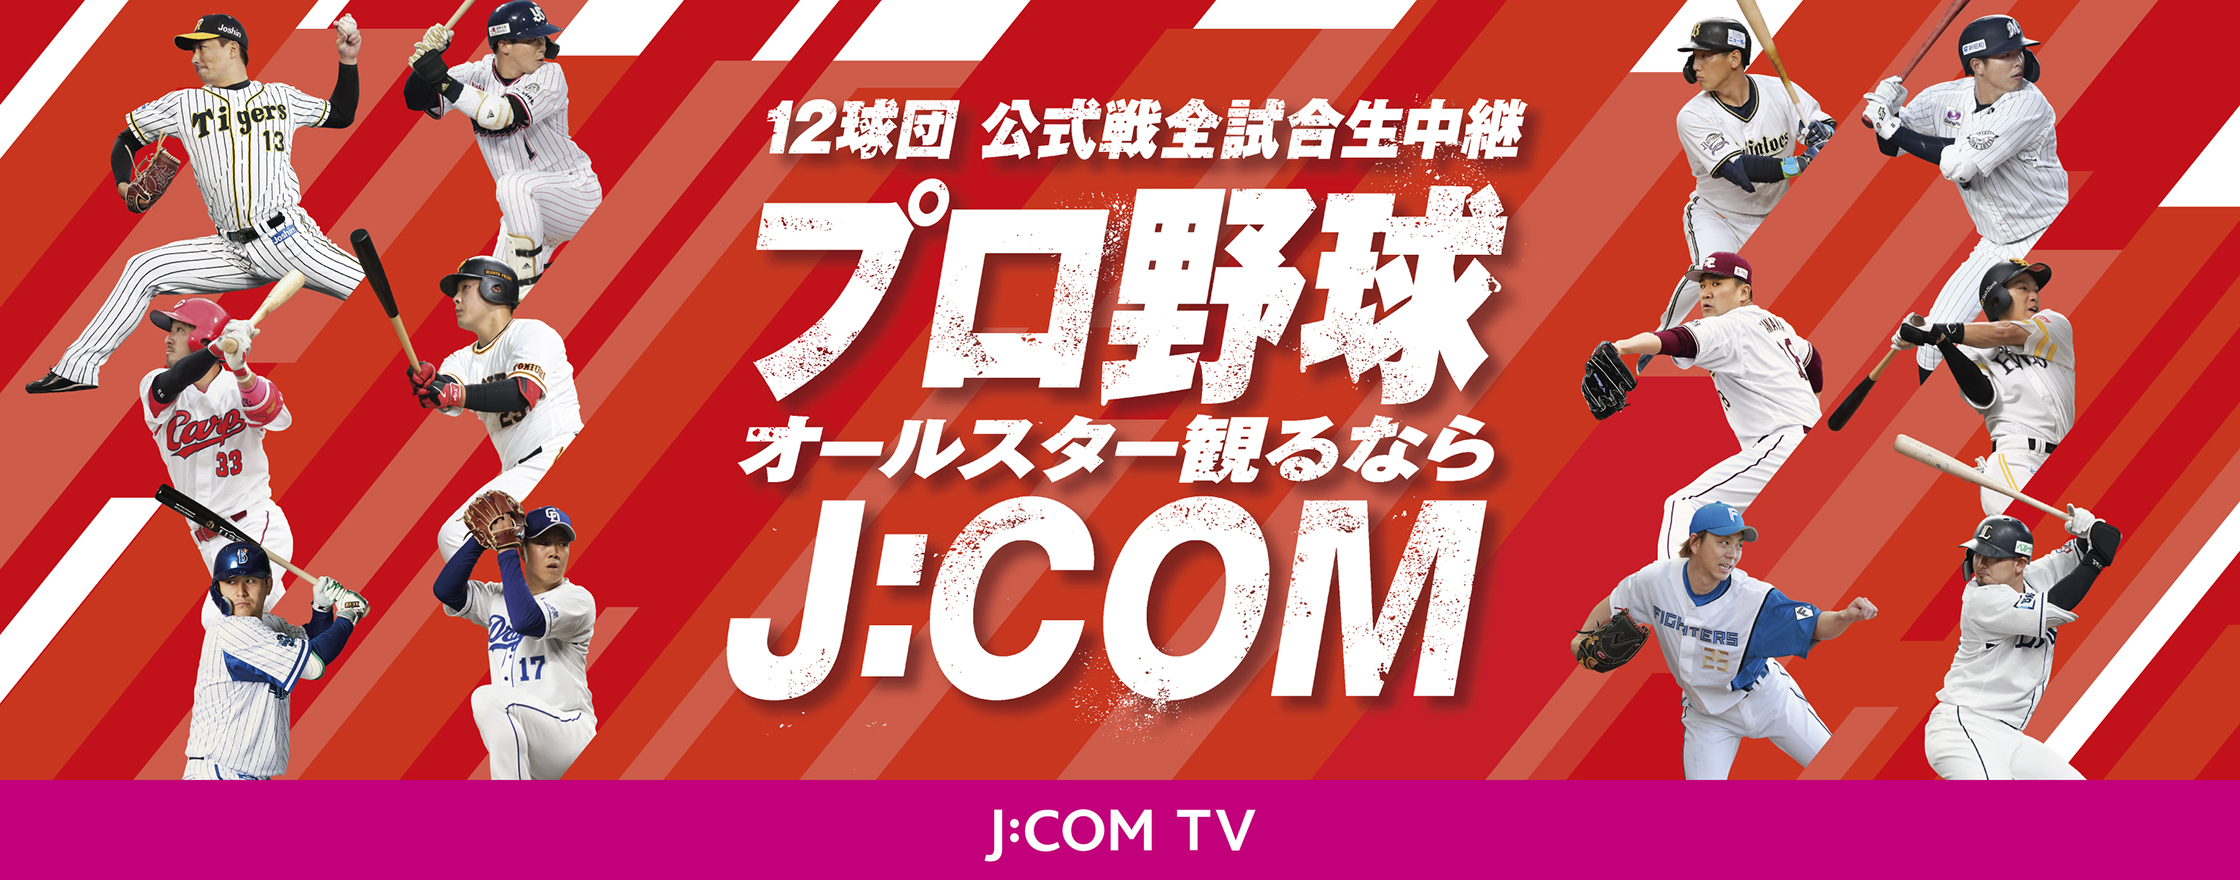 12球団 公式戦全試合生中継 プロ野球交流戦観るならJ:COM J:COM TV